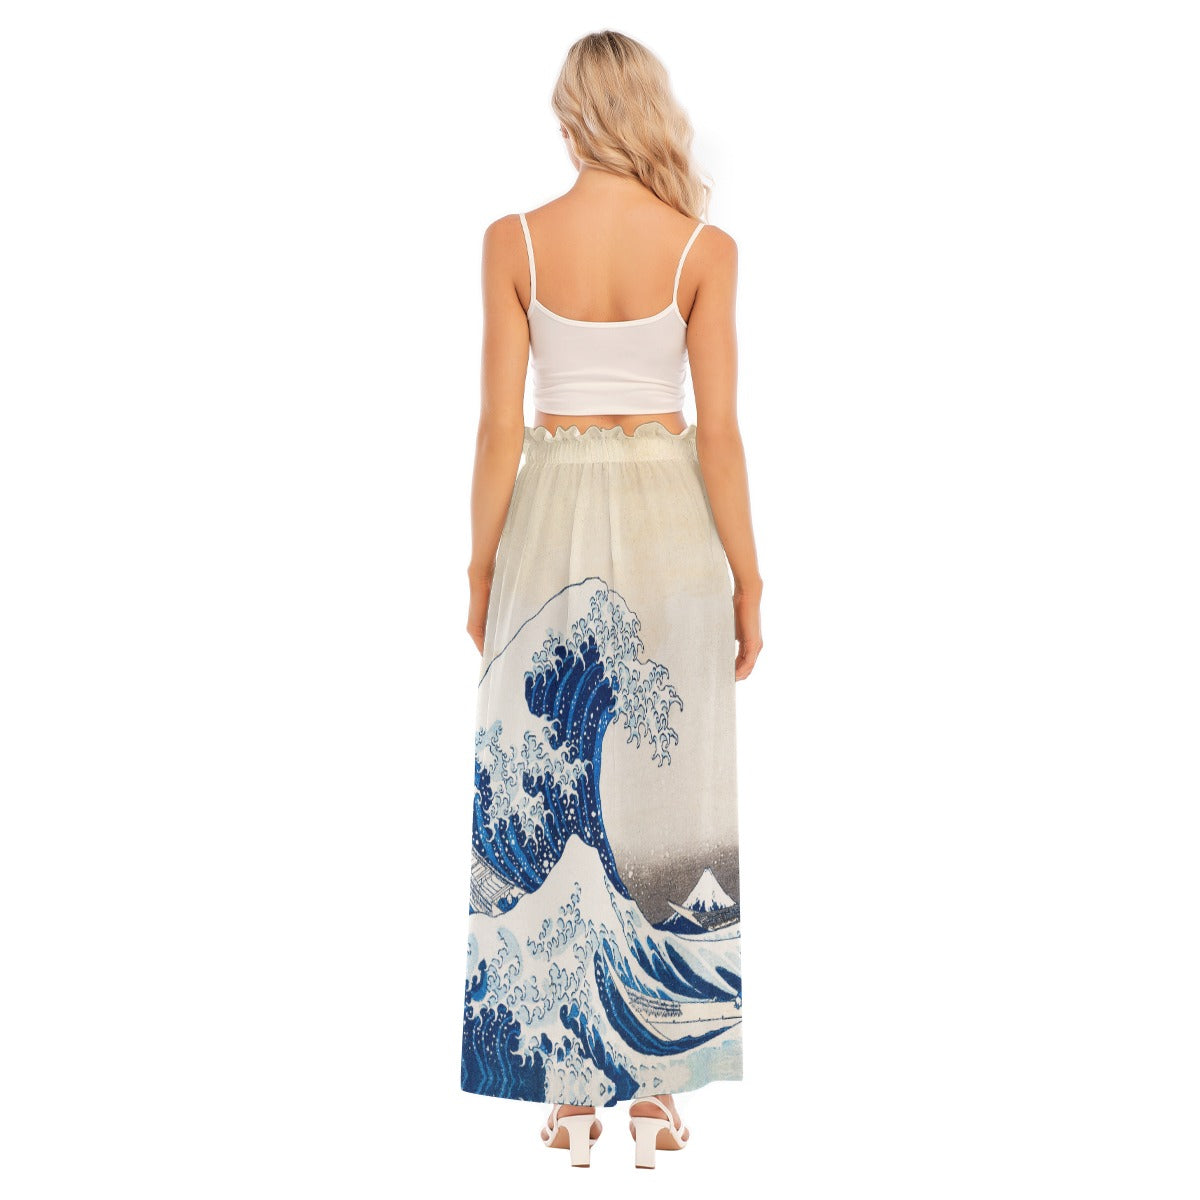 Vibrant oceanic design skirt inspired by Japanese art